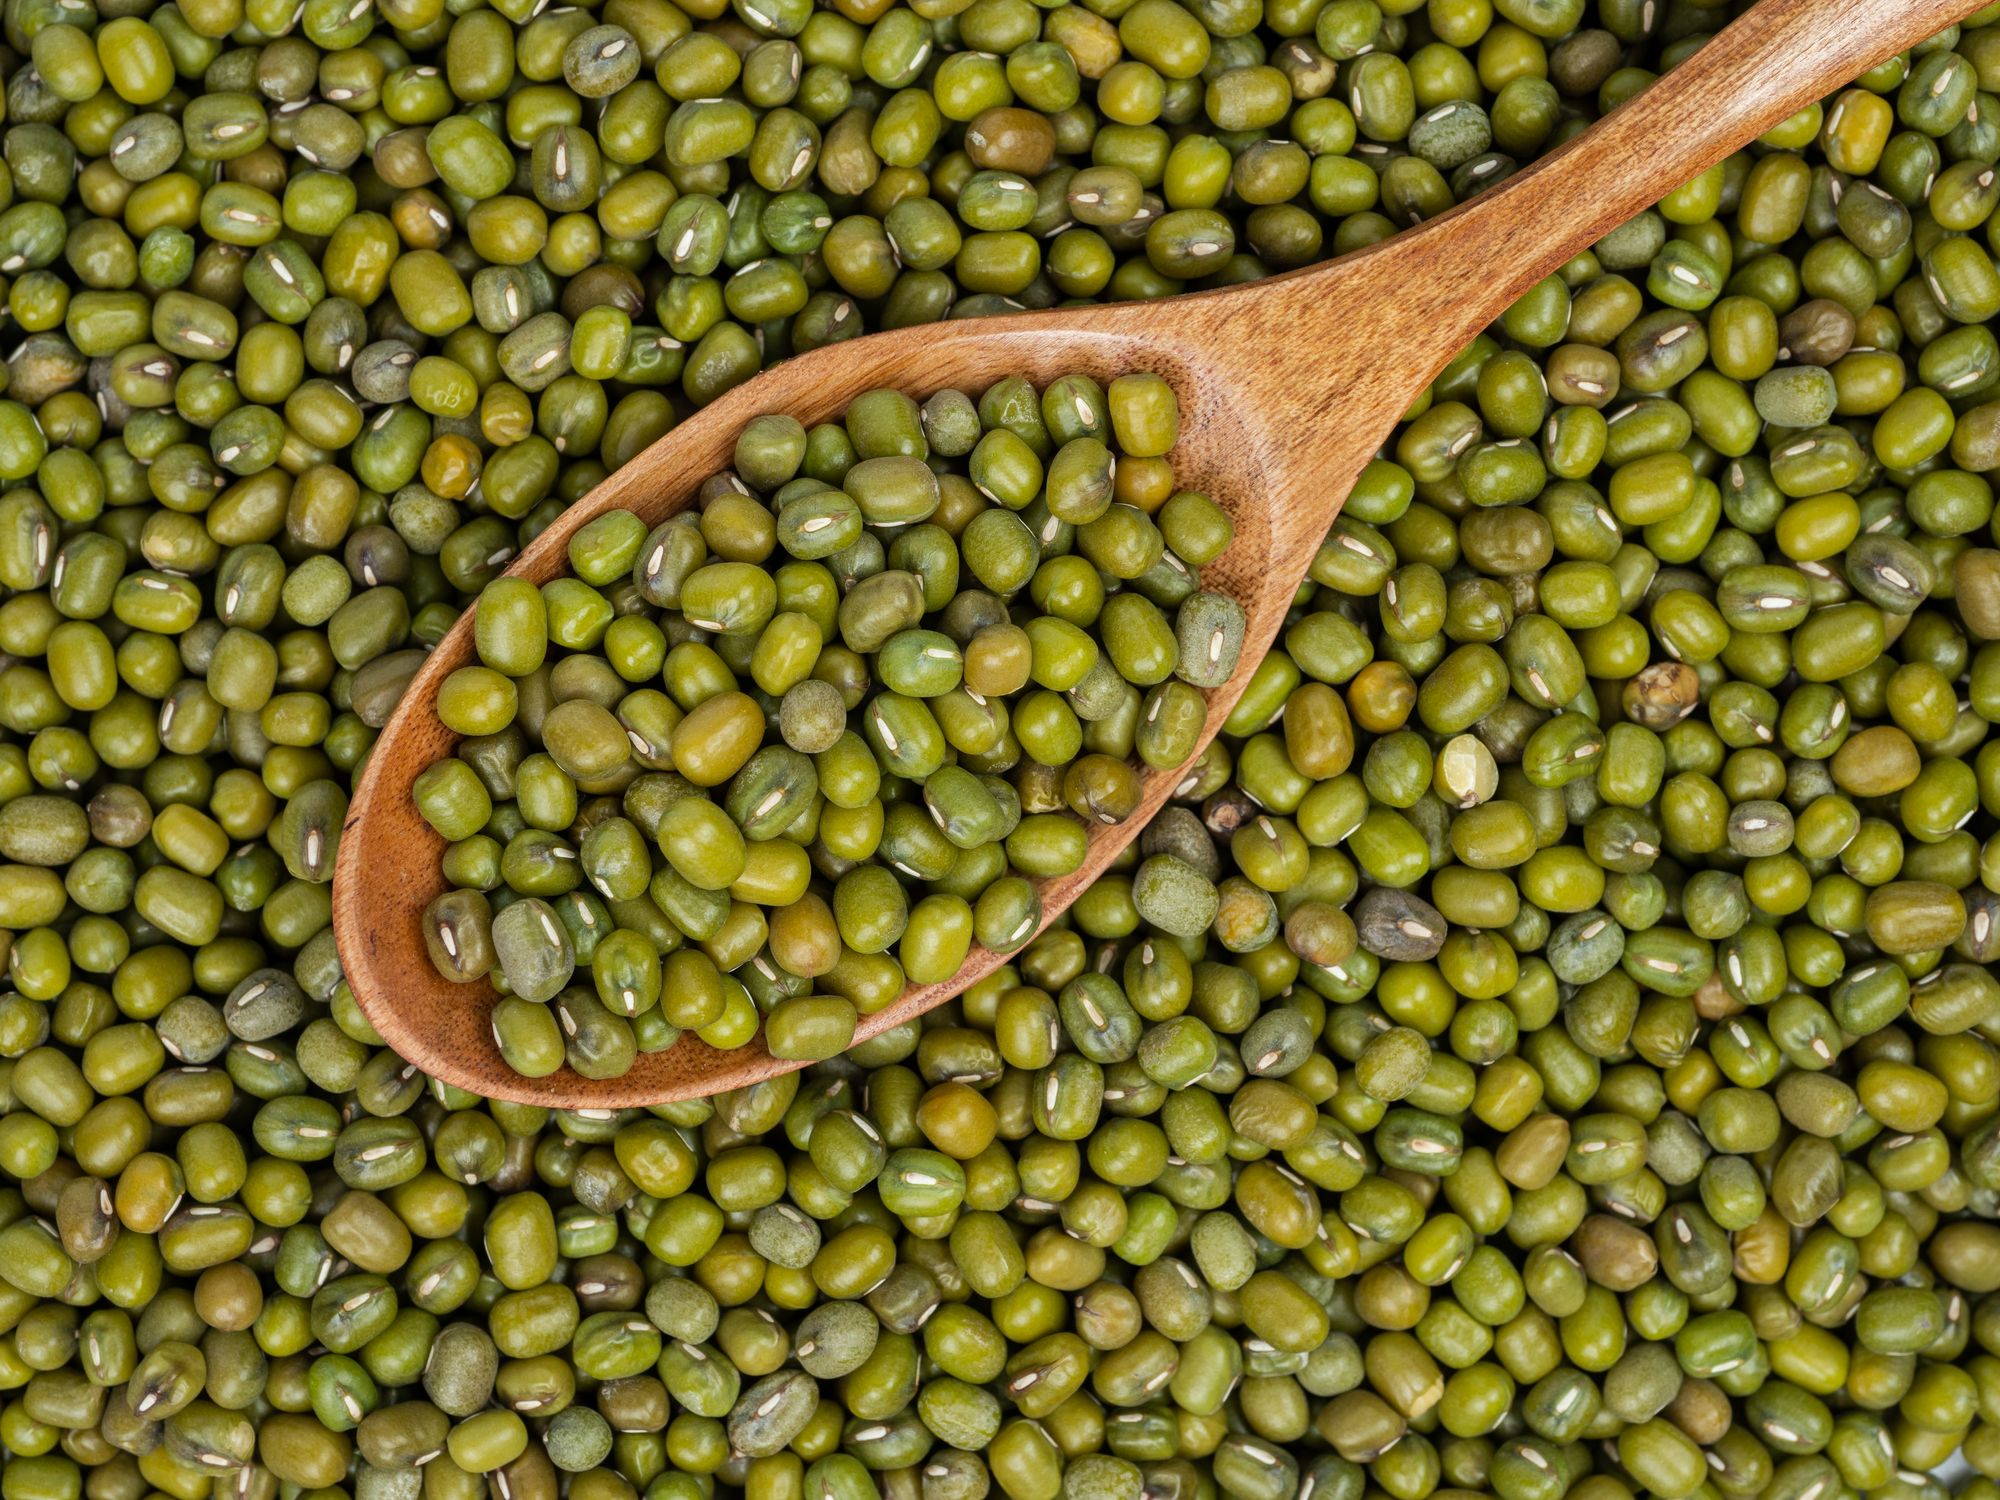 azuki, soja verde... legumbres que se usan poco y que pueden enriquecer mucho tu menú